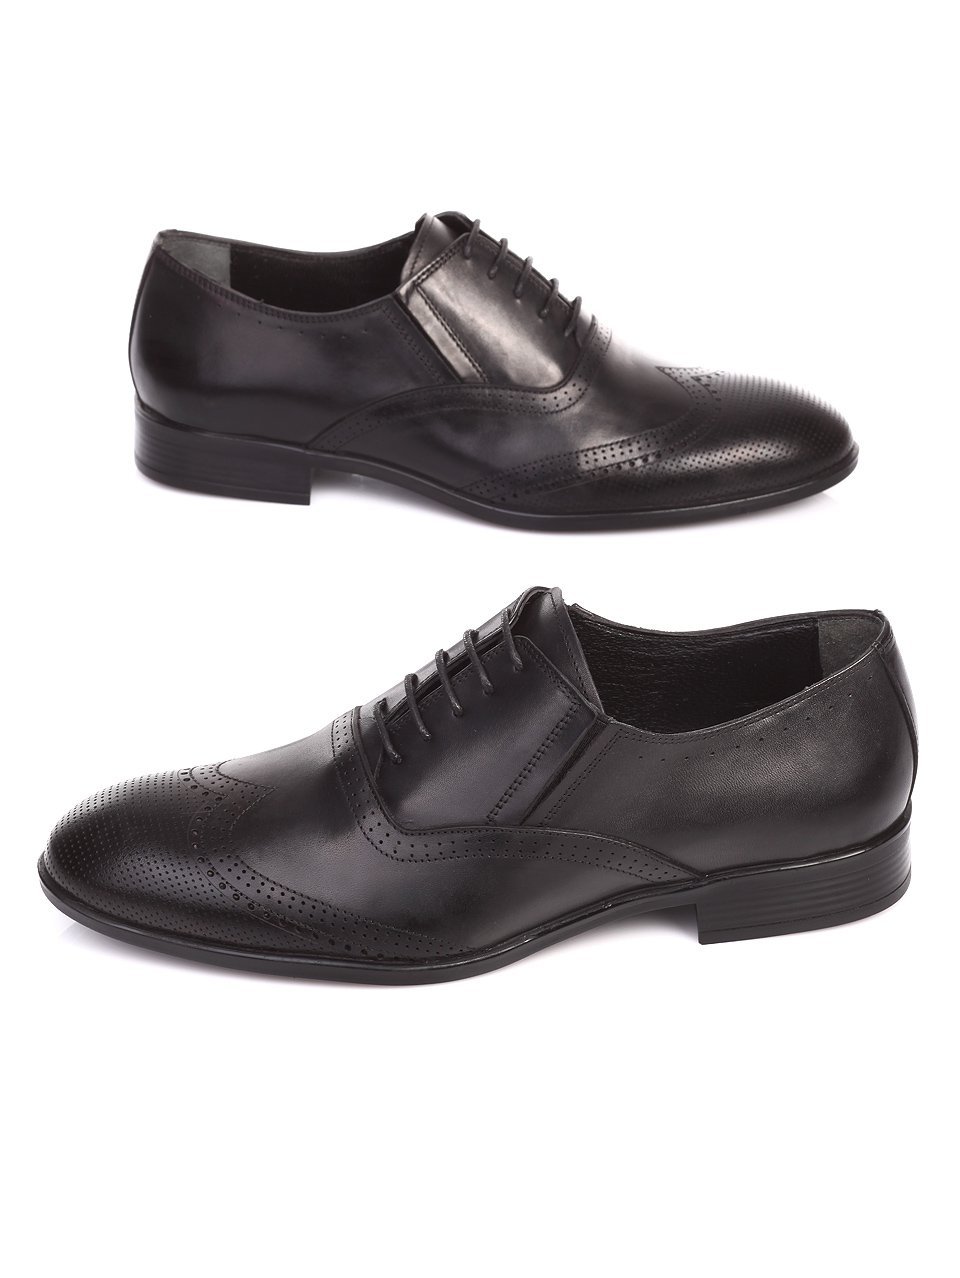 Елегантни мъжки обувки от естествена кожа 7AT-17607 black